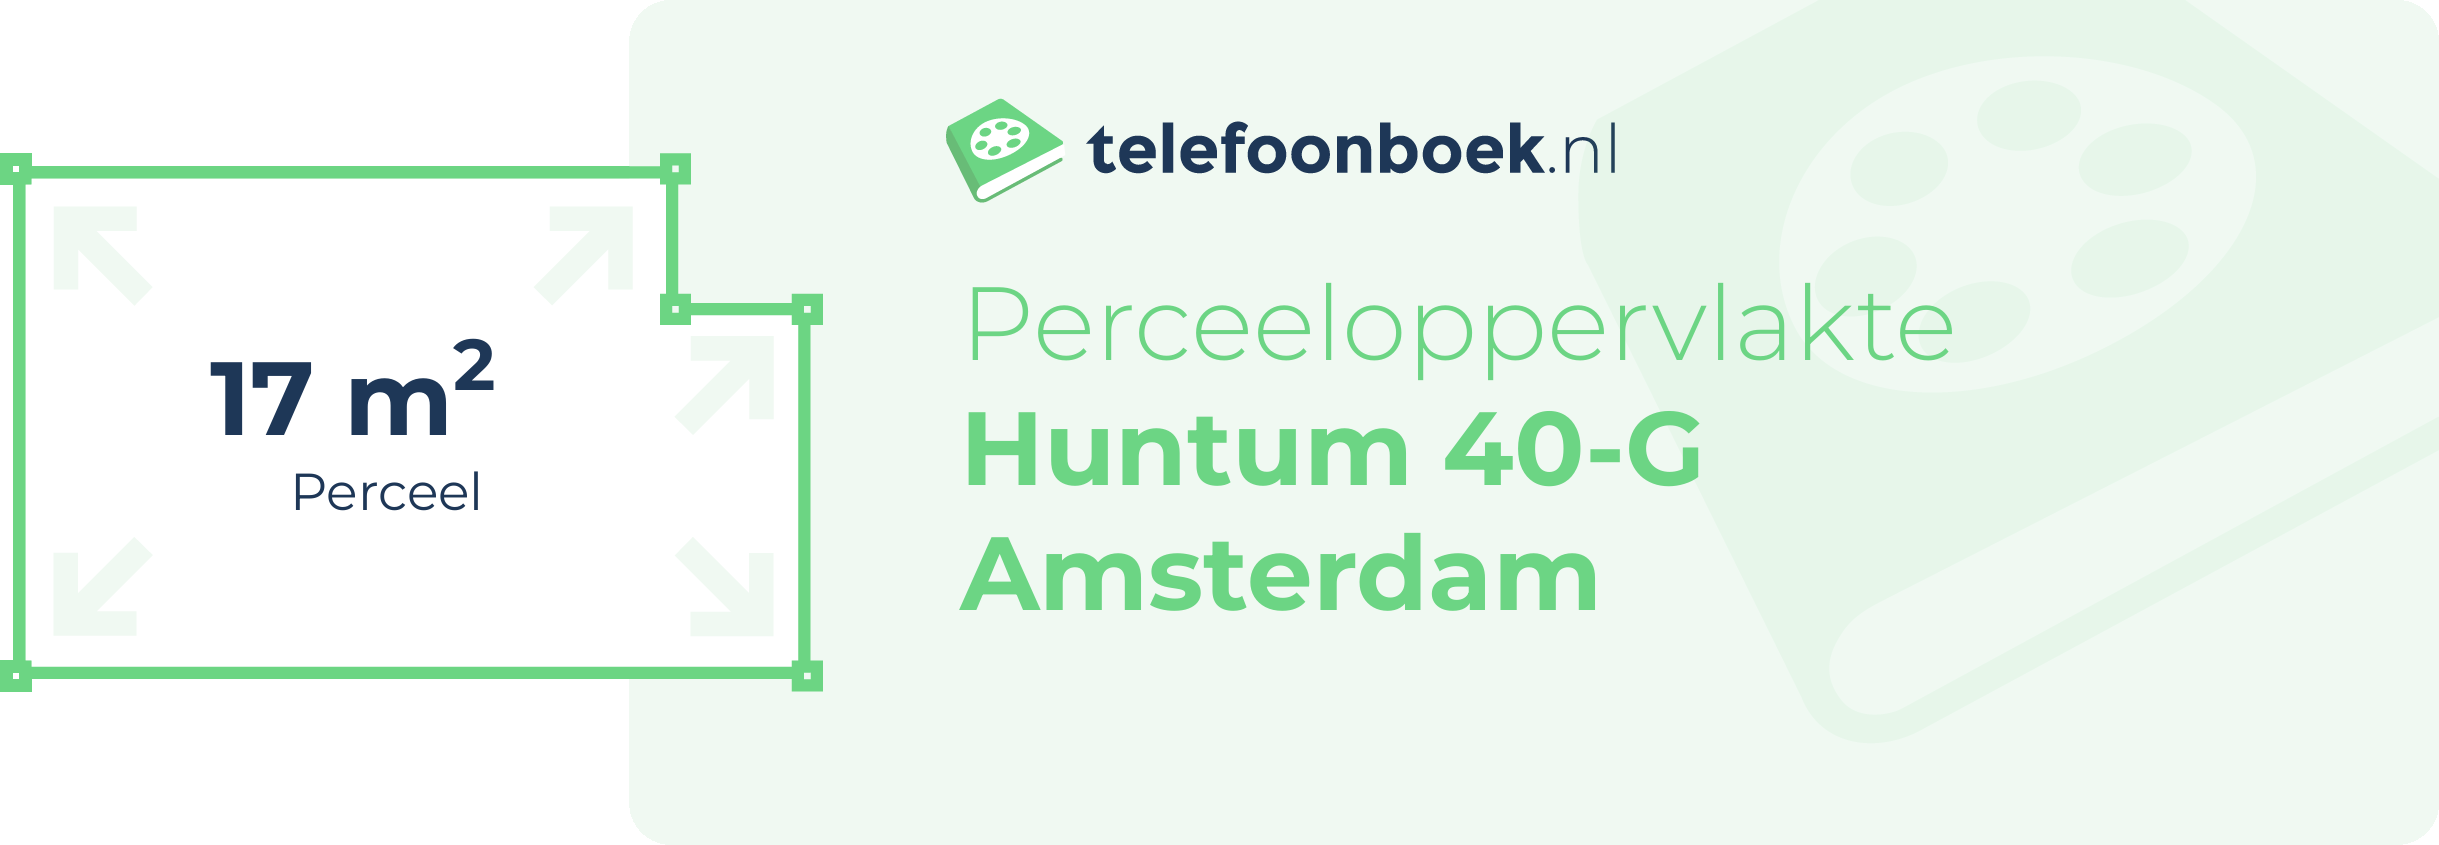 Perceeloppervlakte Huntum 40-G Amsterdam